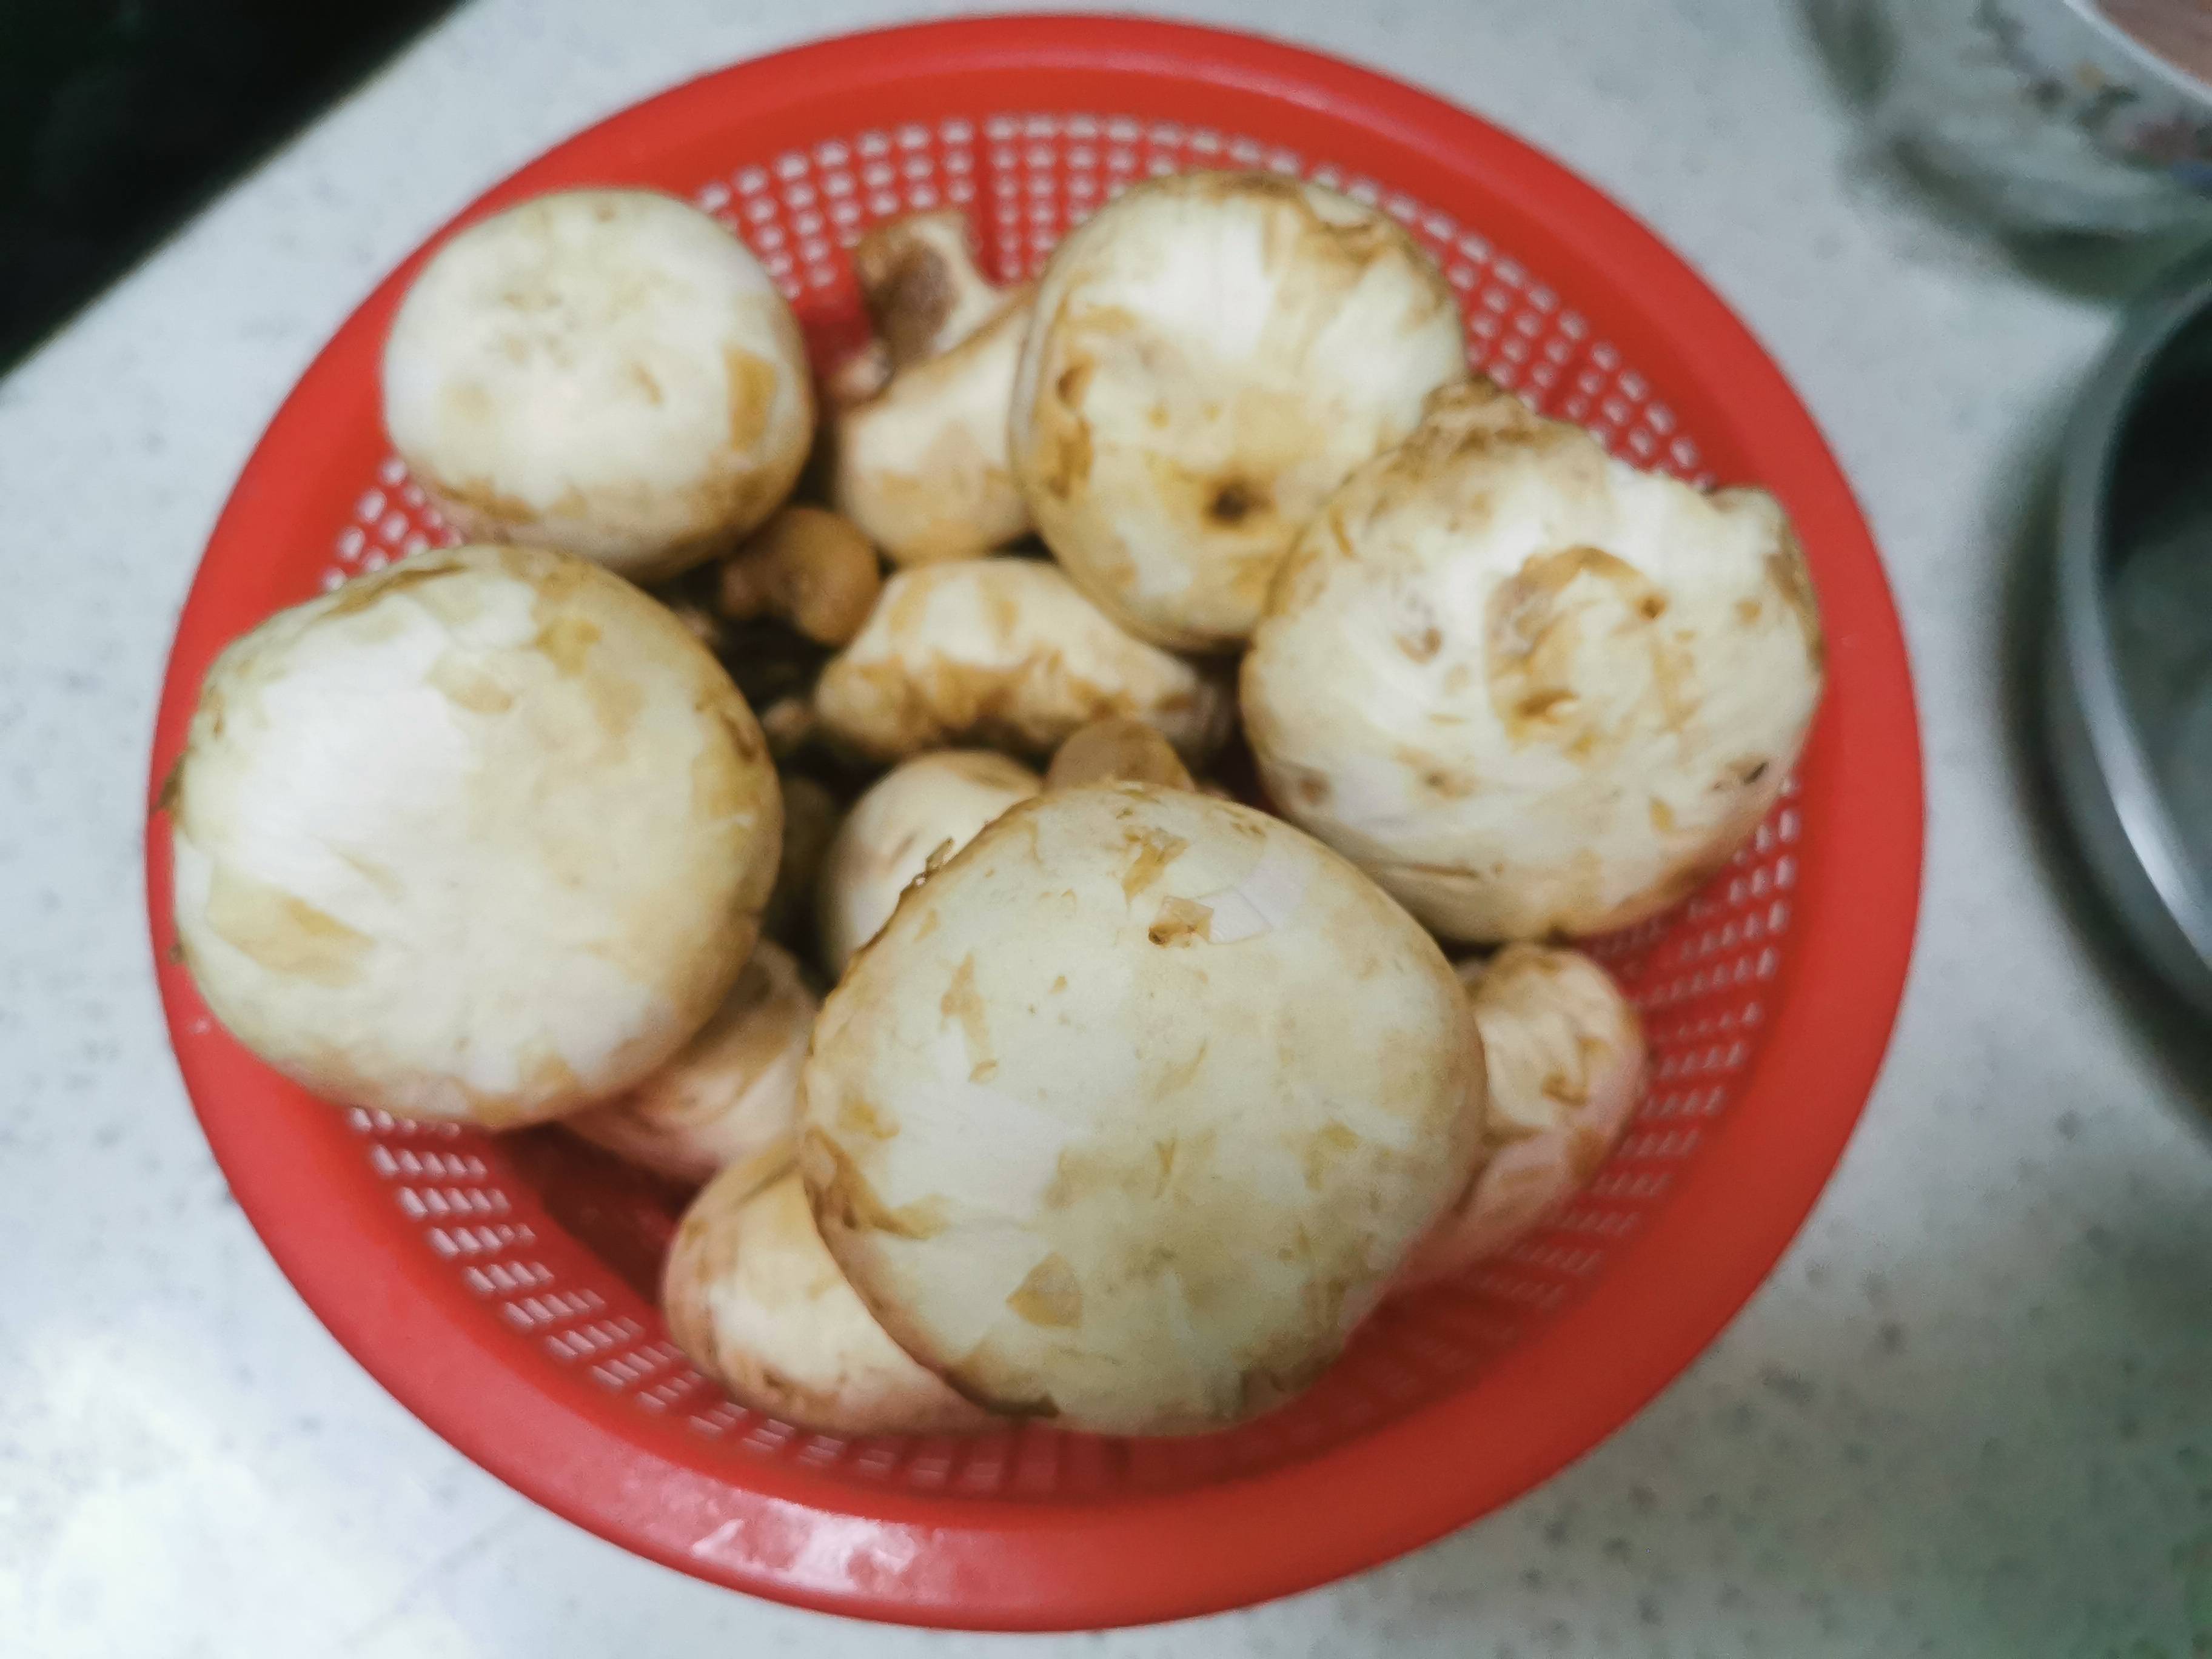 [homemade] Fried Pork with Mushrooms recipe